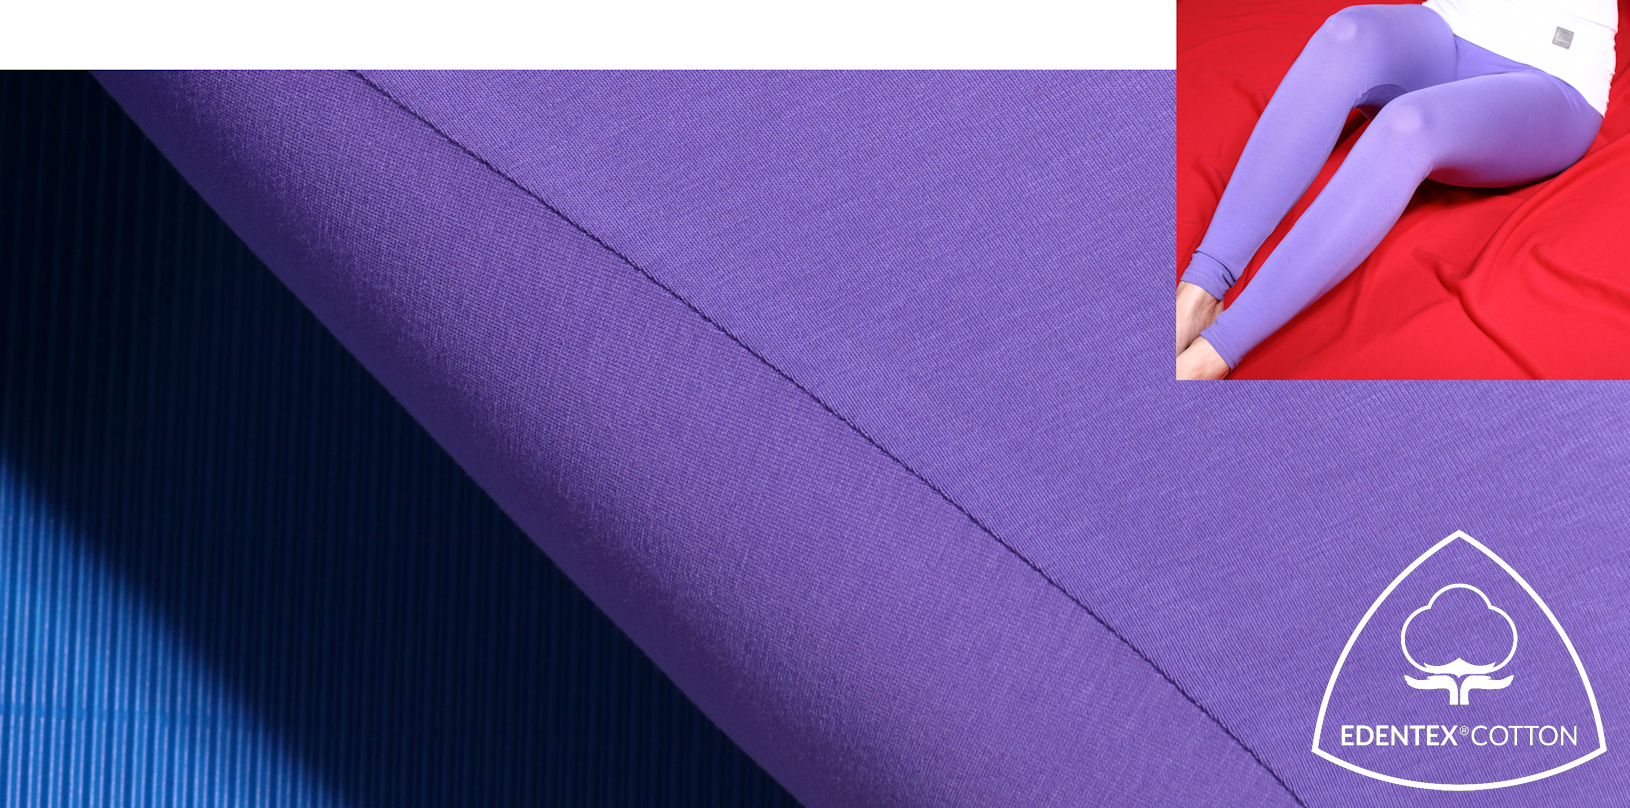 Przy zastosowaniu zaawansowanej technologii produkcji oraz wyselekcjonowanych włókien bawełnianych, stworzona została wysokogatunkowa przędza EDENTEX®COTTON